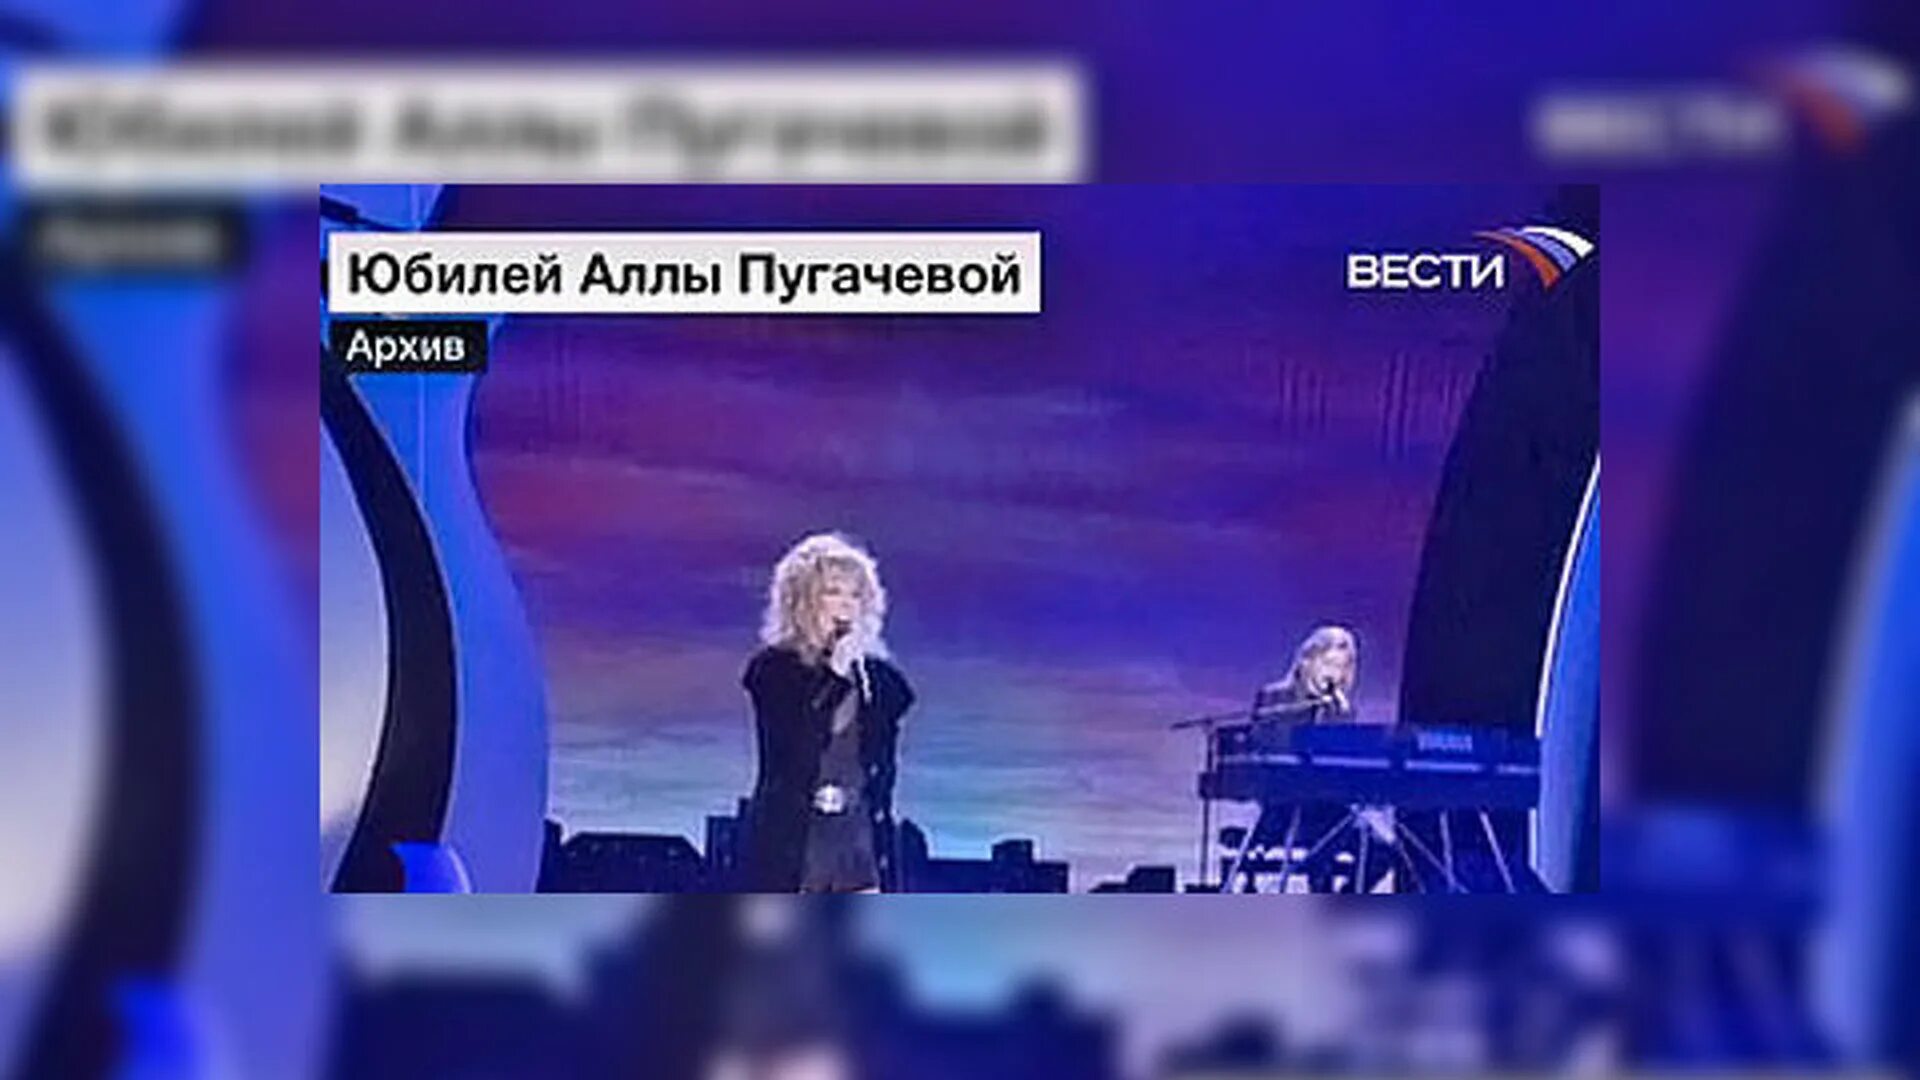 Пугачева Юбилейный концерт. Пугачева выступление. Пугачева концерт 2021.